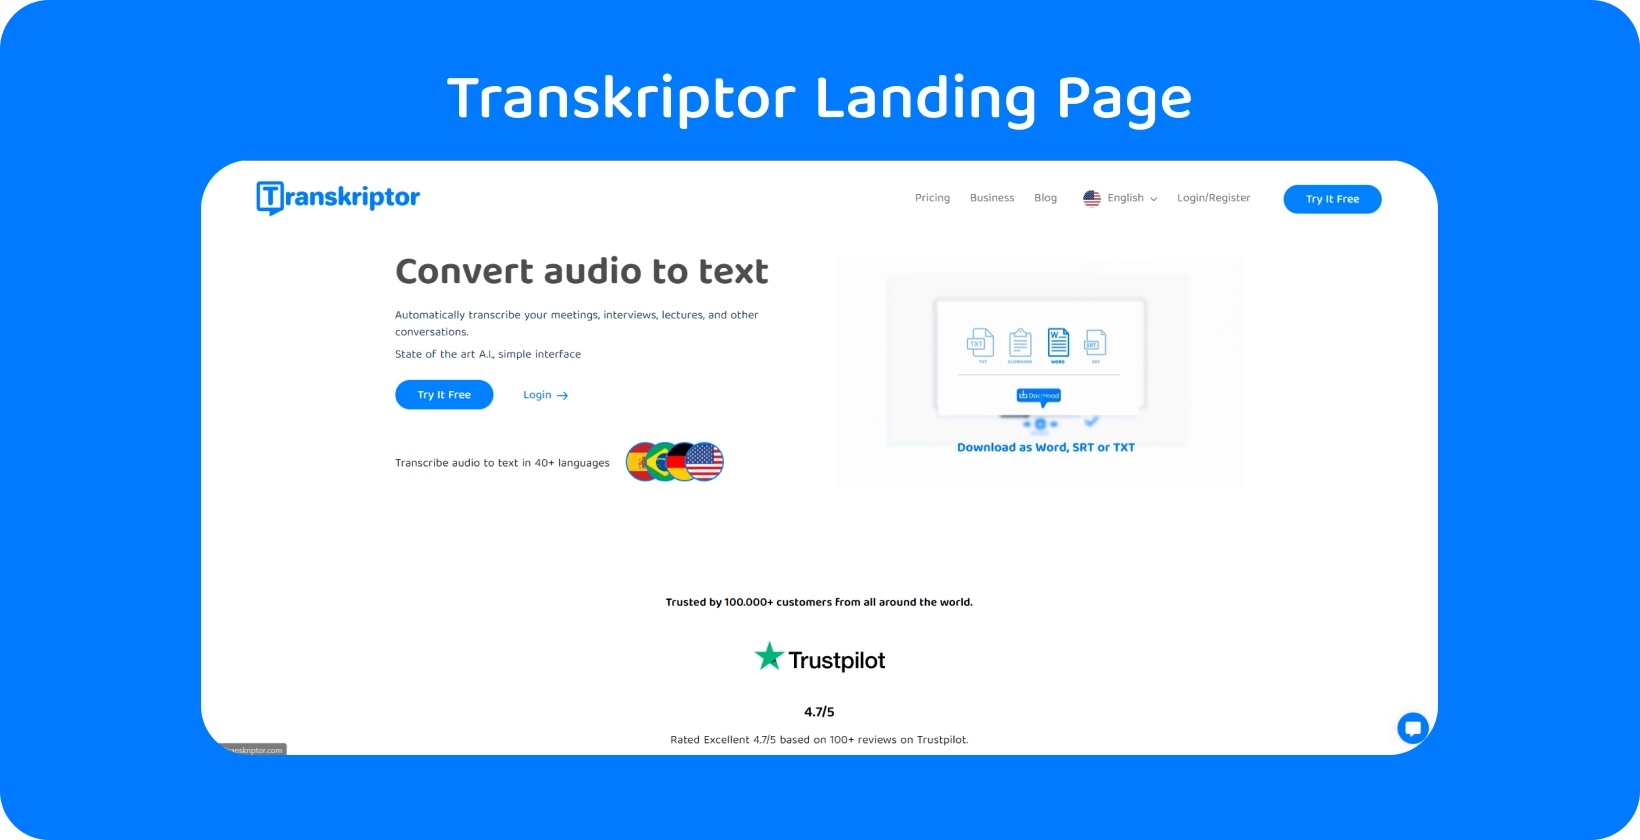 Transkriptor लोगो के साथ एक एनिमेटेड कार्यक्षेत्र, जो कंप्यूटर पर उपशीर्षक के अनुवाद की प्रक्रिया को दर्शाता है.